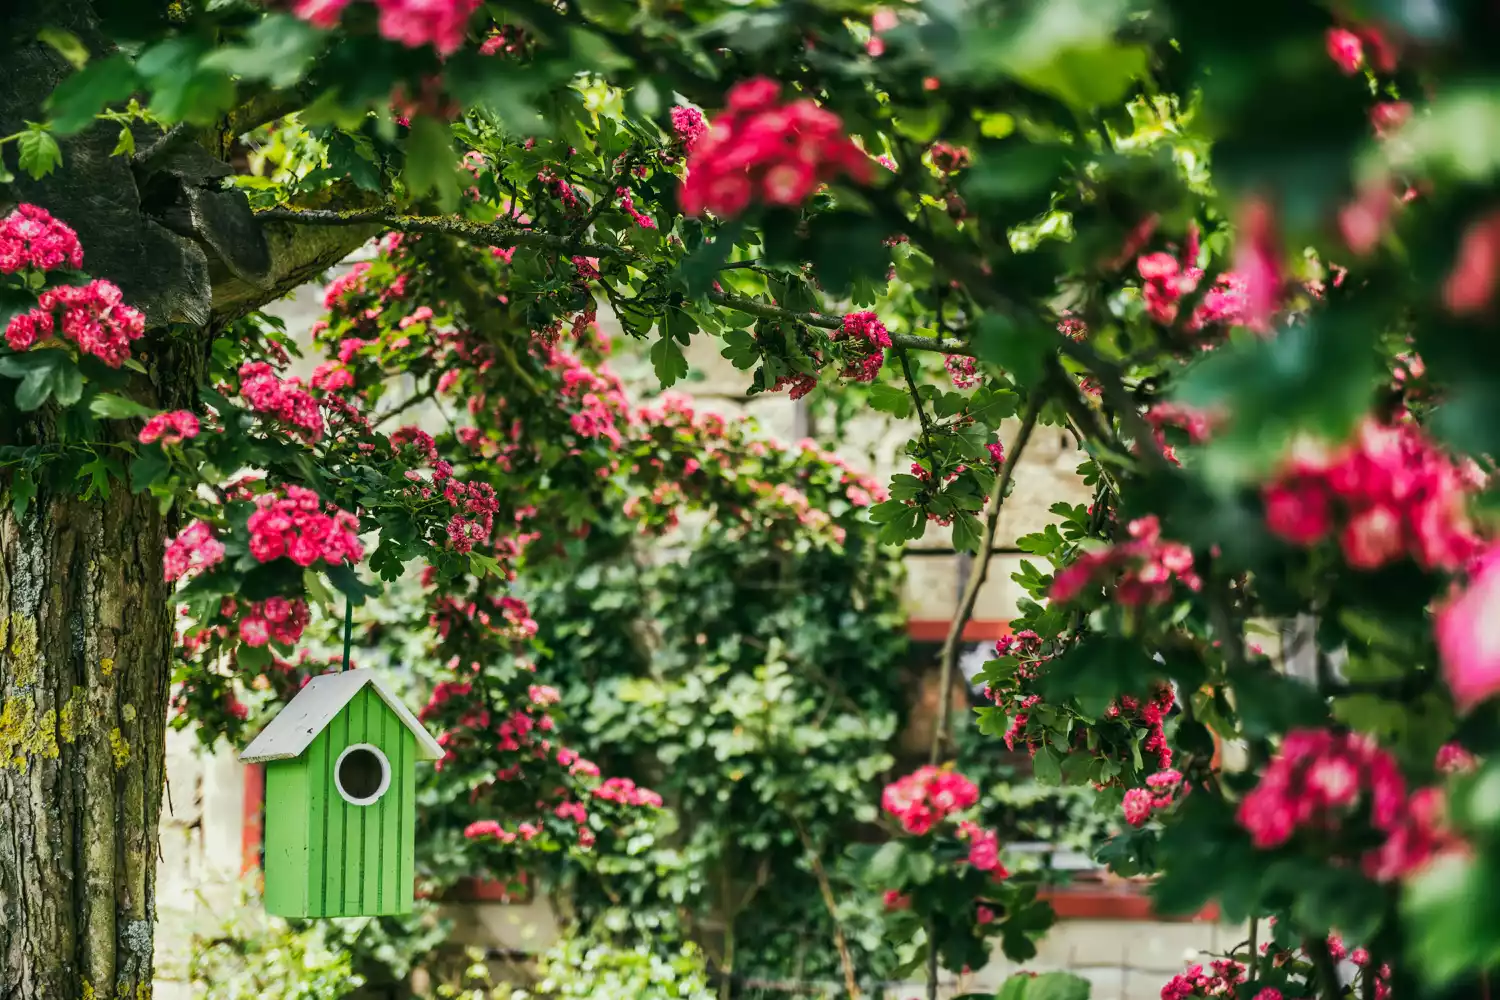 Birdhouse in garden